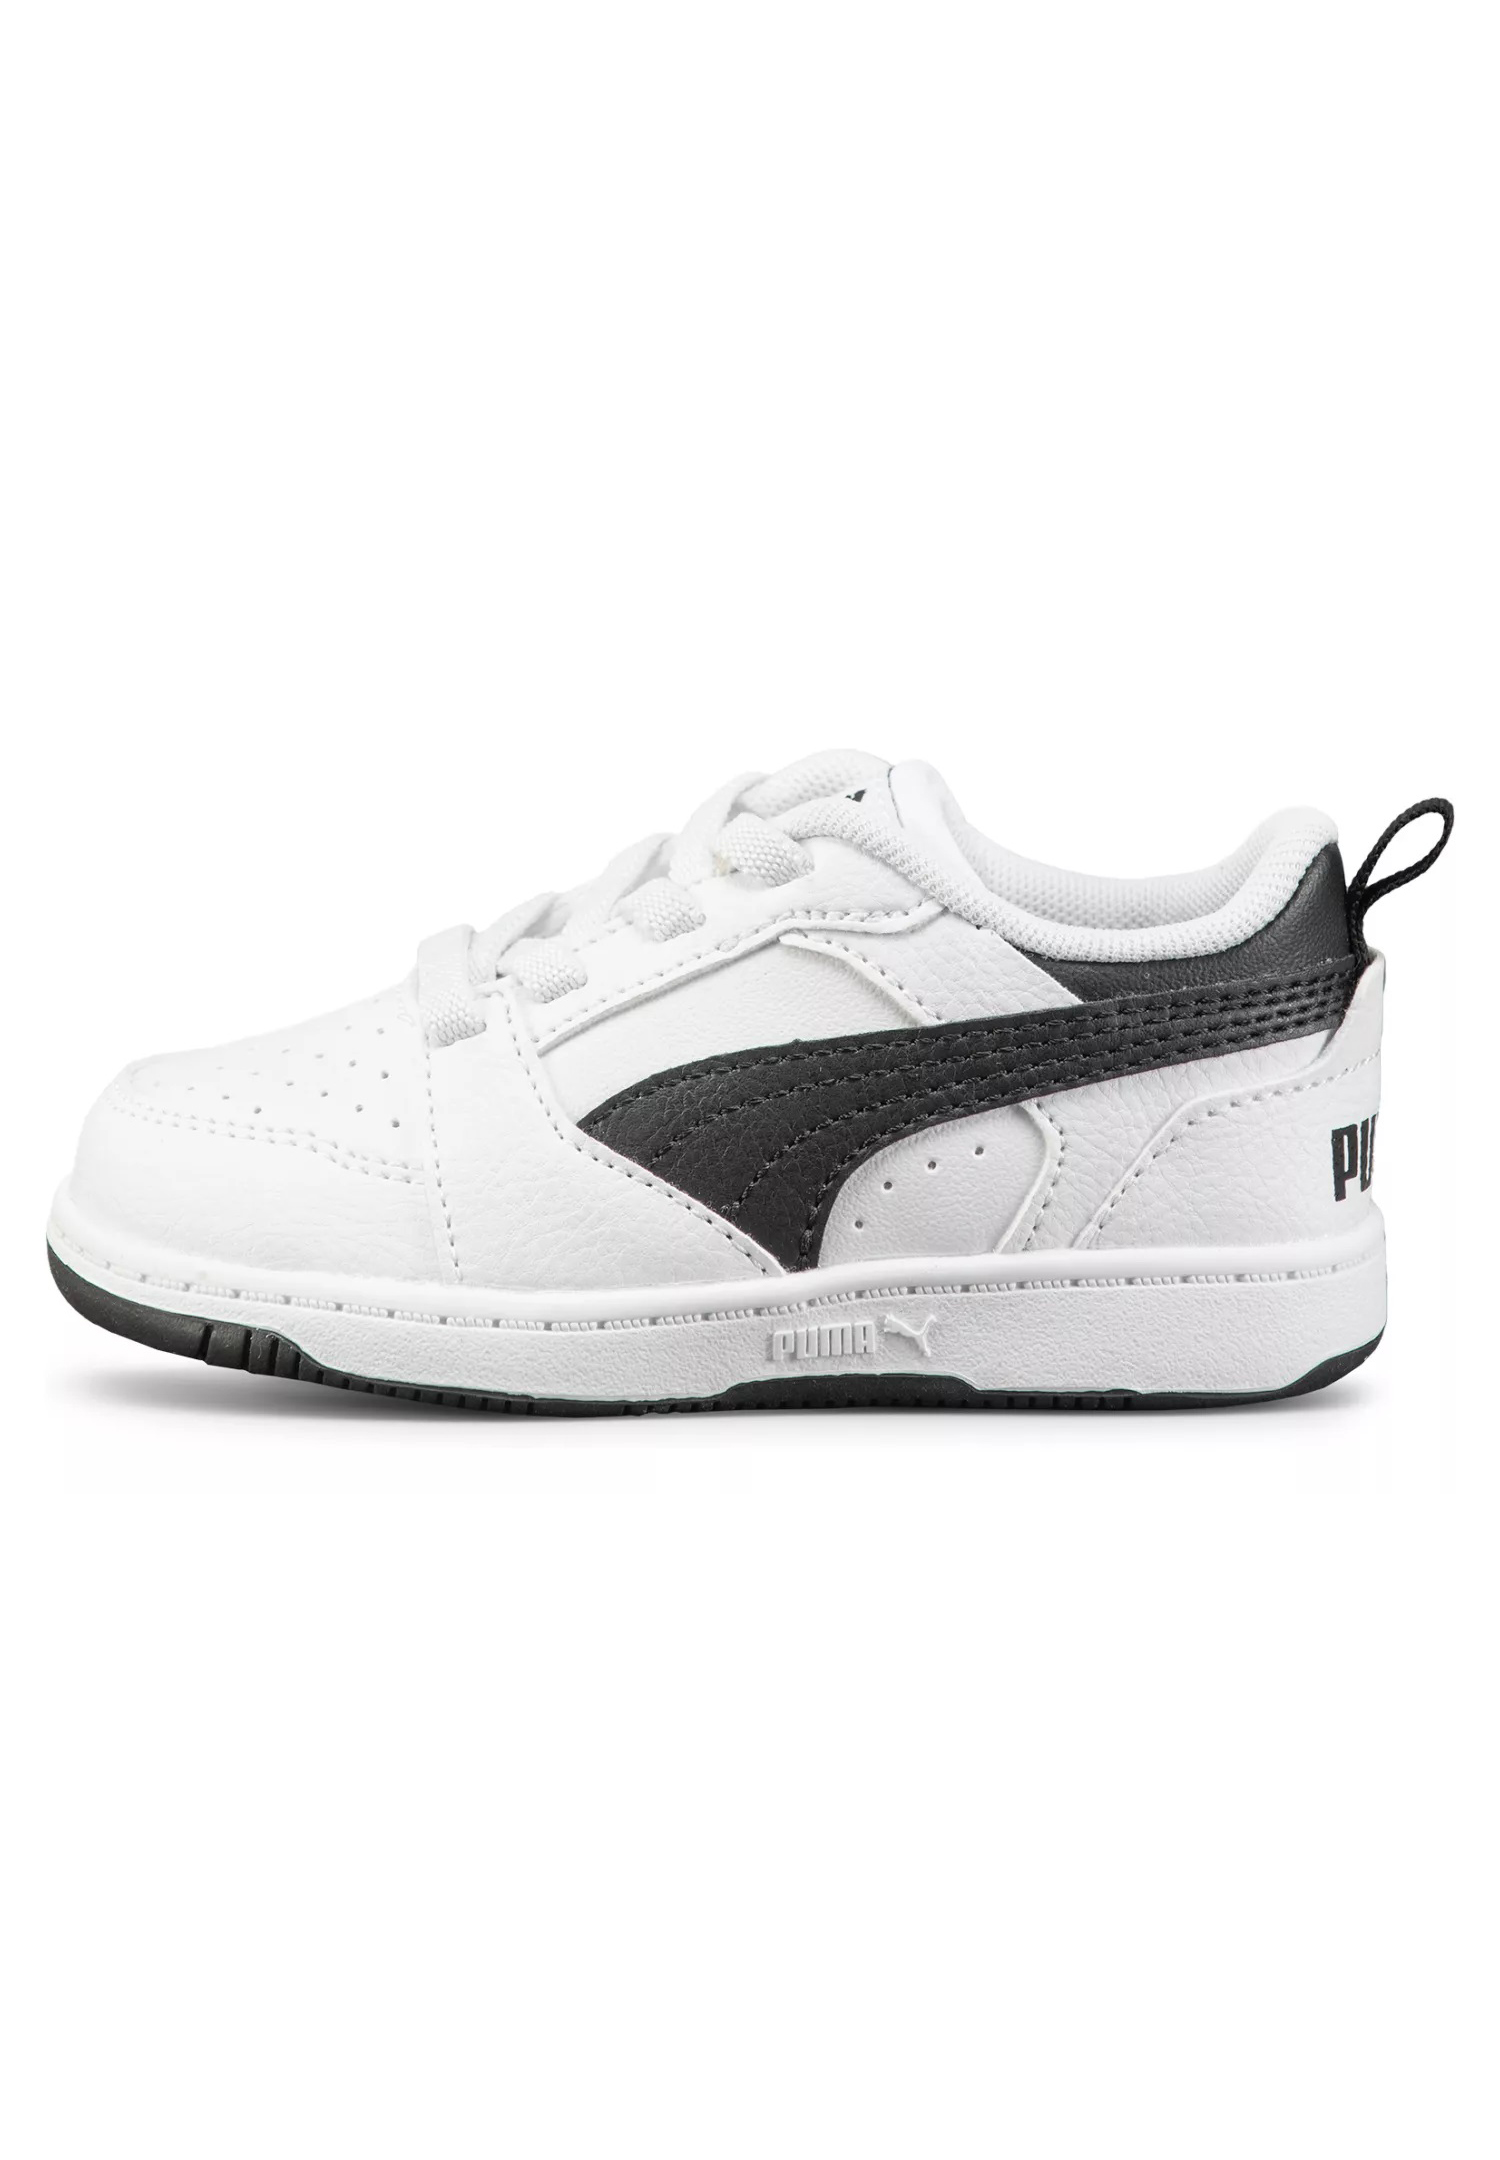 Puma Rebound V6 Lo AC PS Unisex Kinder Sneaker 396742 02 weiß/schwarz 